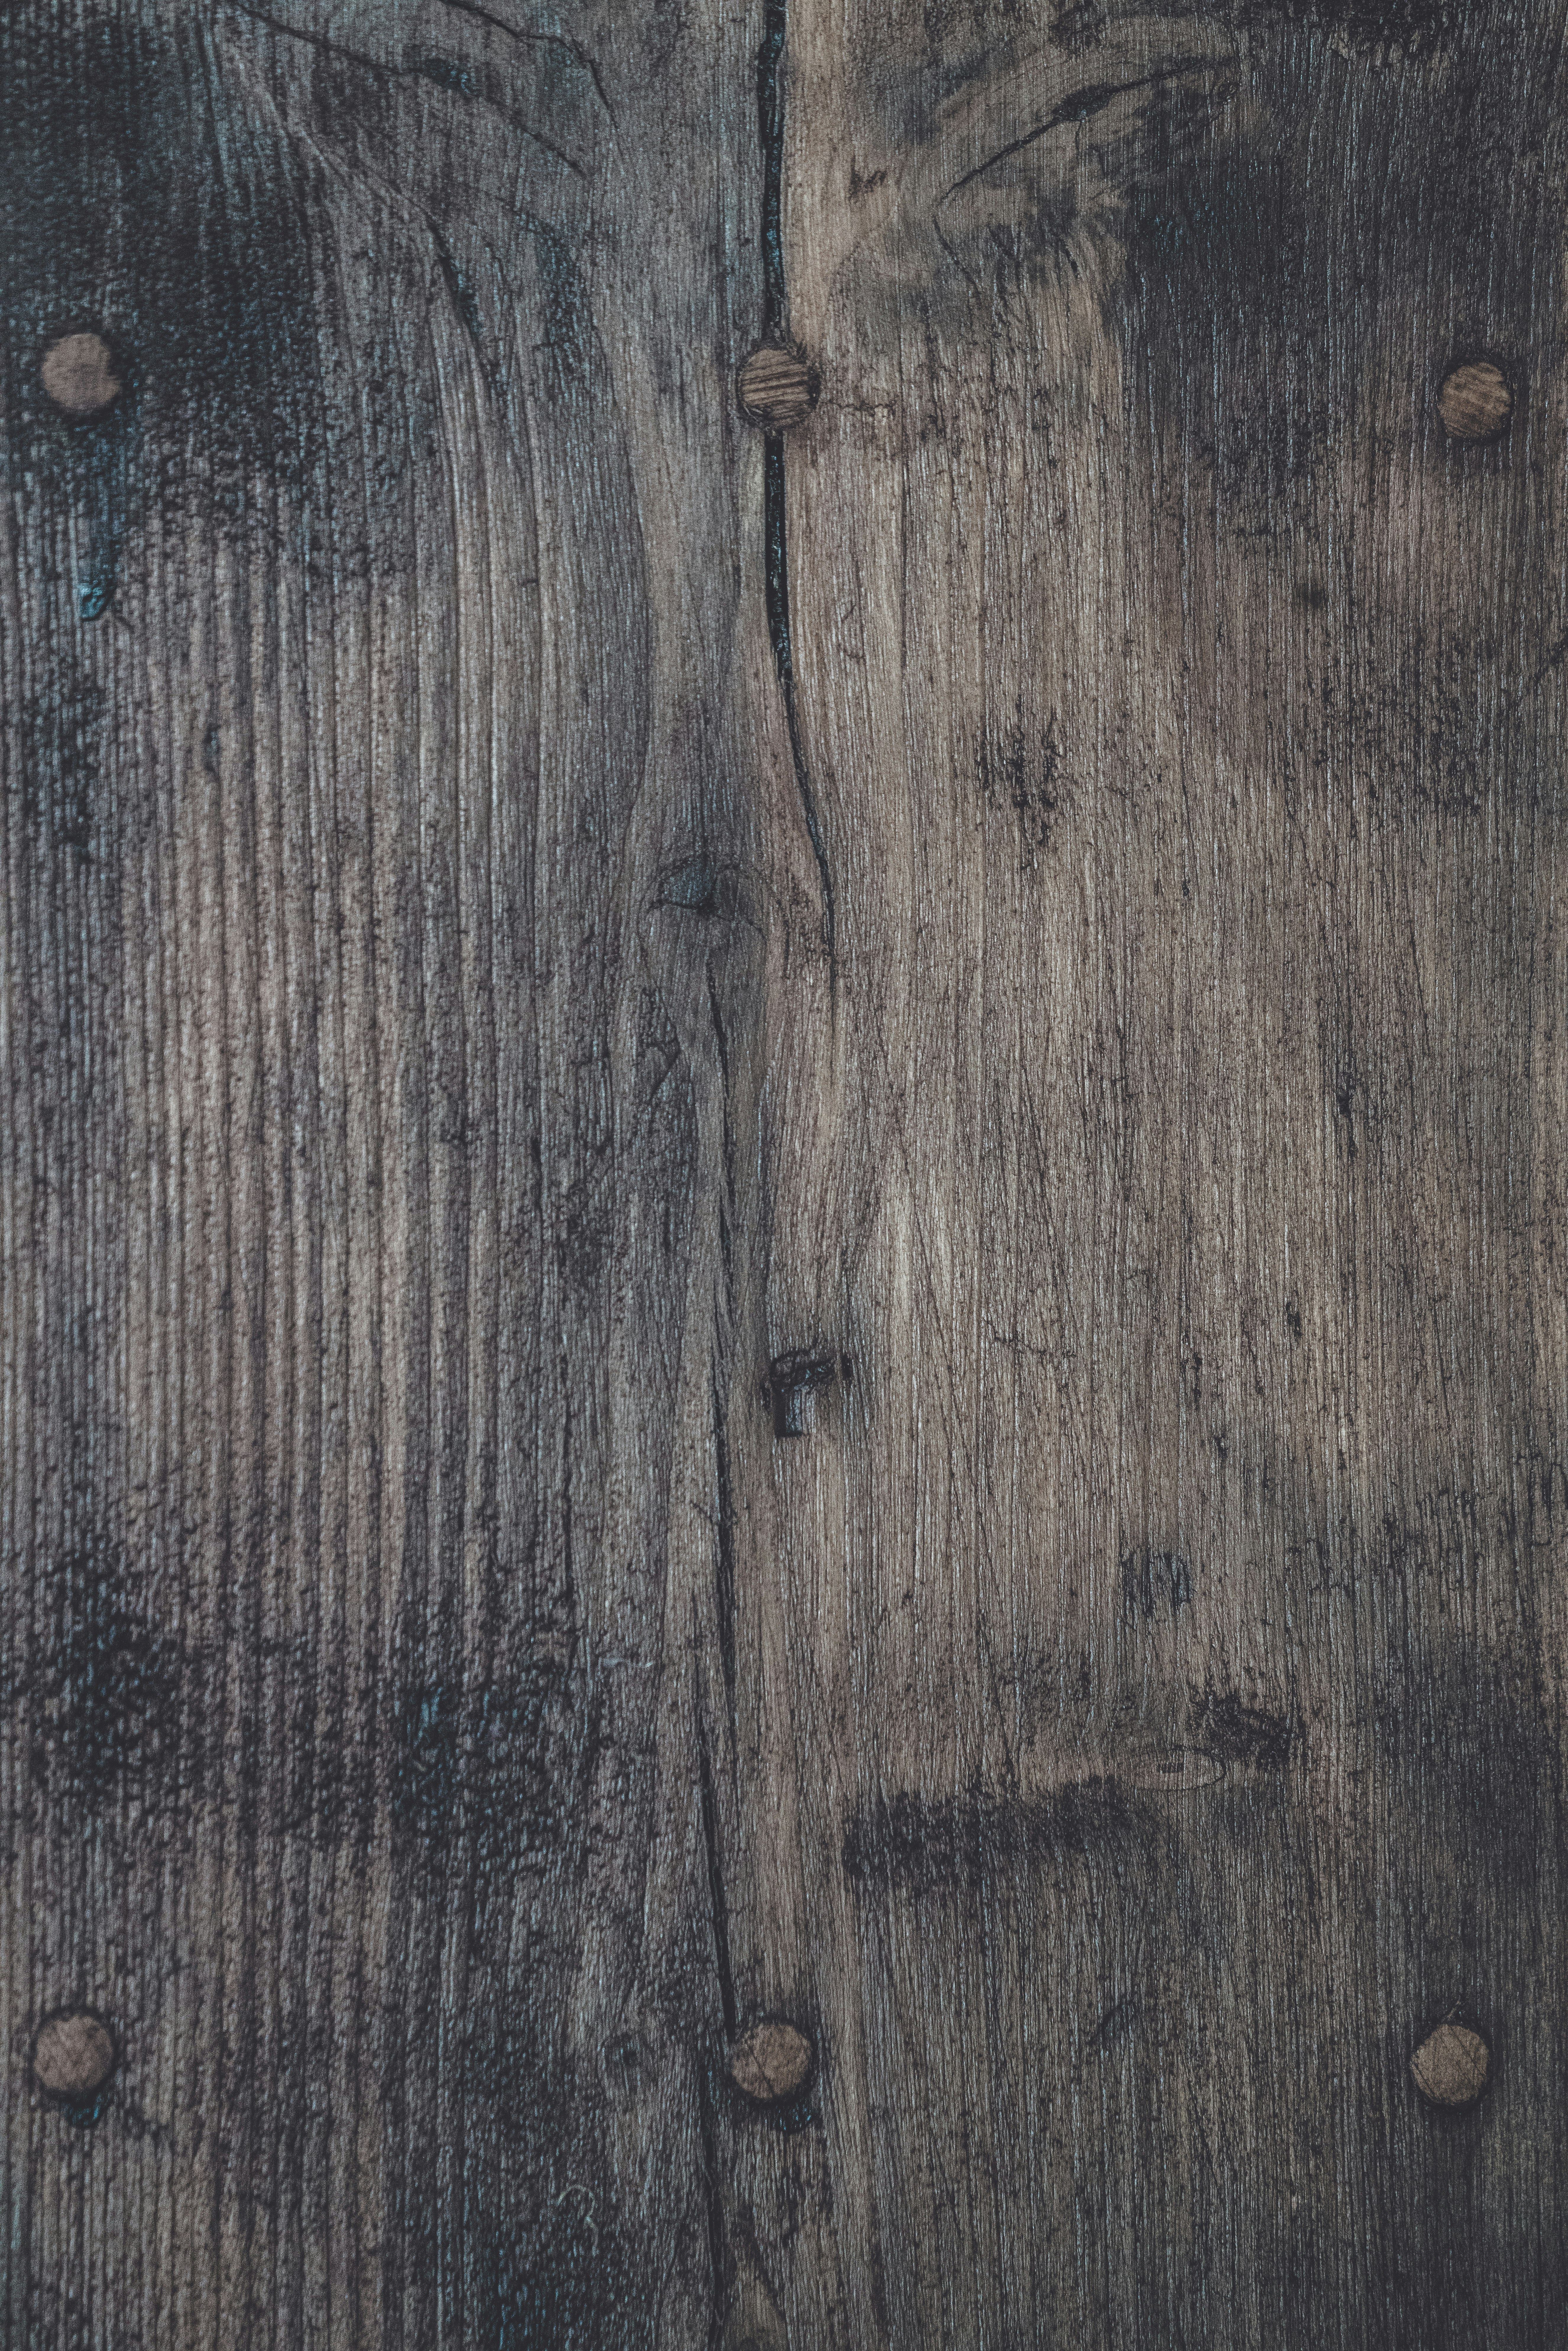 Textured wooden plain background